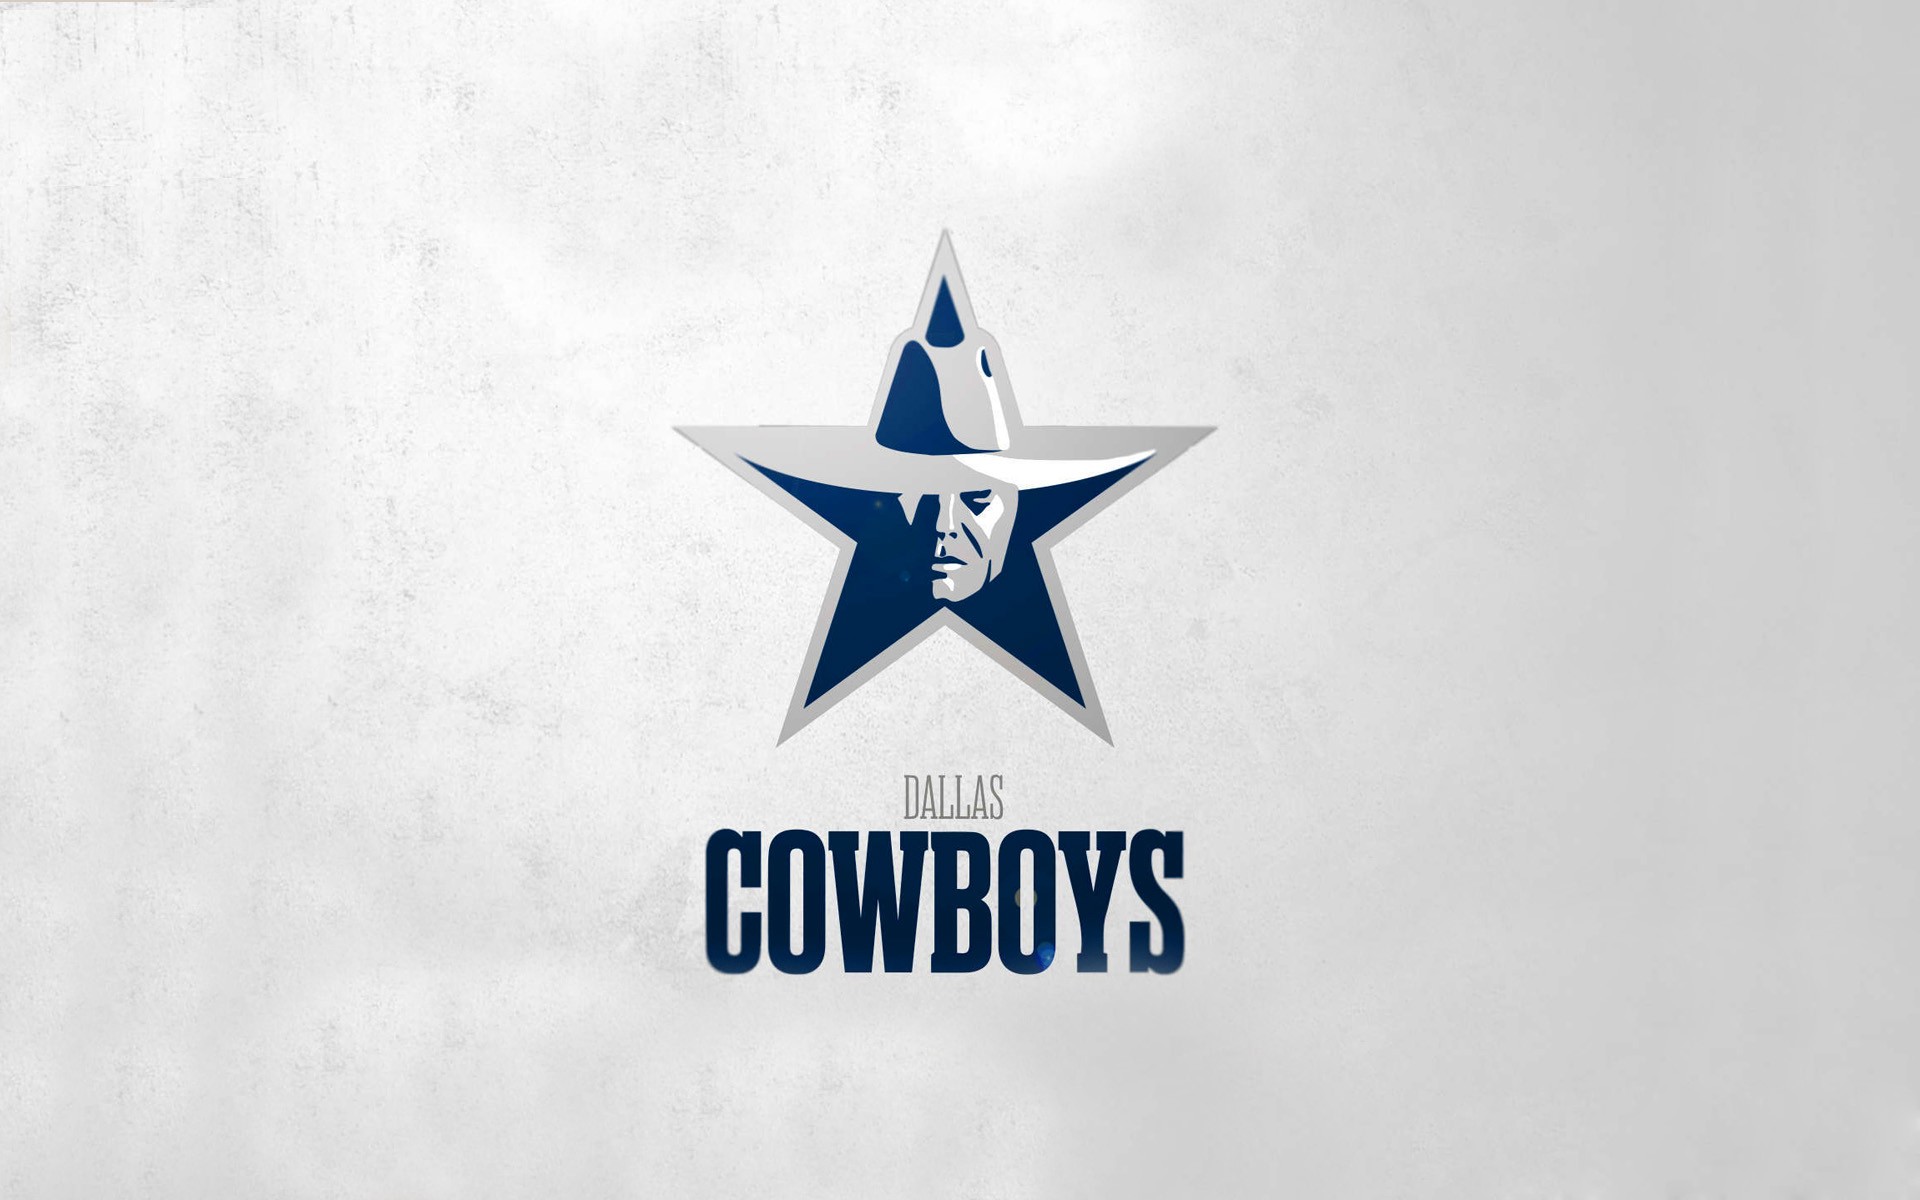 Bryon Jones 31 Dallas Cowboys CB artwork by Glen Kertes  Dallas cowboys  decor Dallas cowboys wallpaper Dallas cowboys